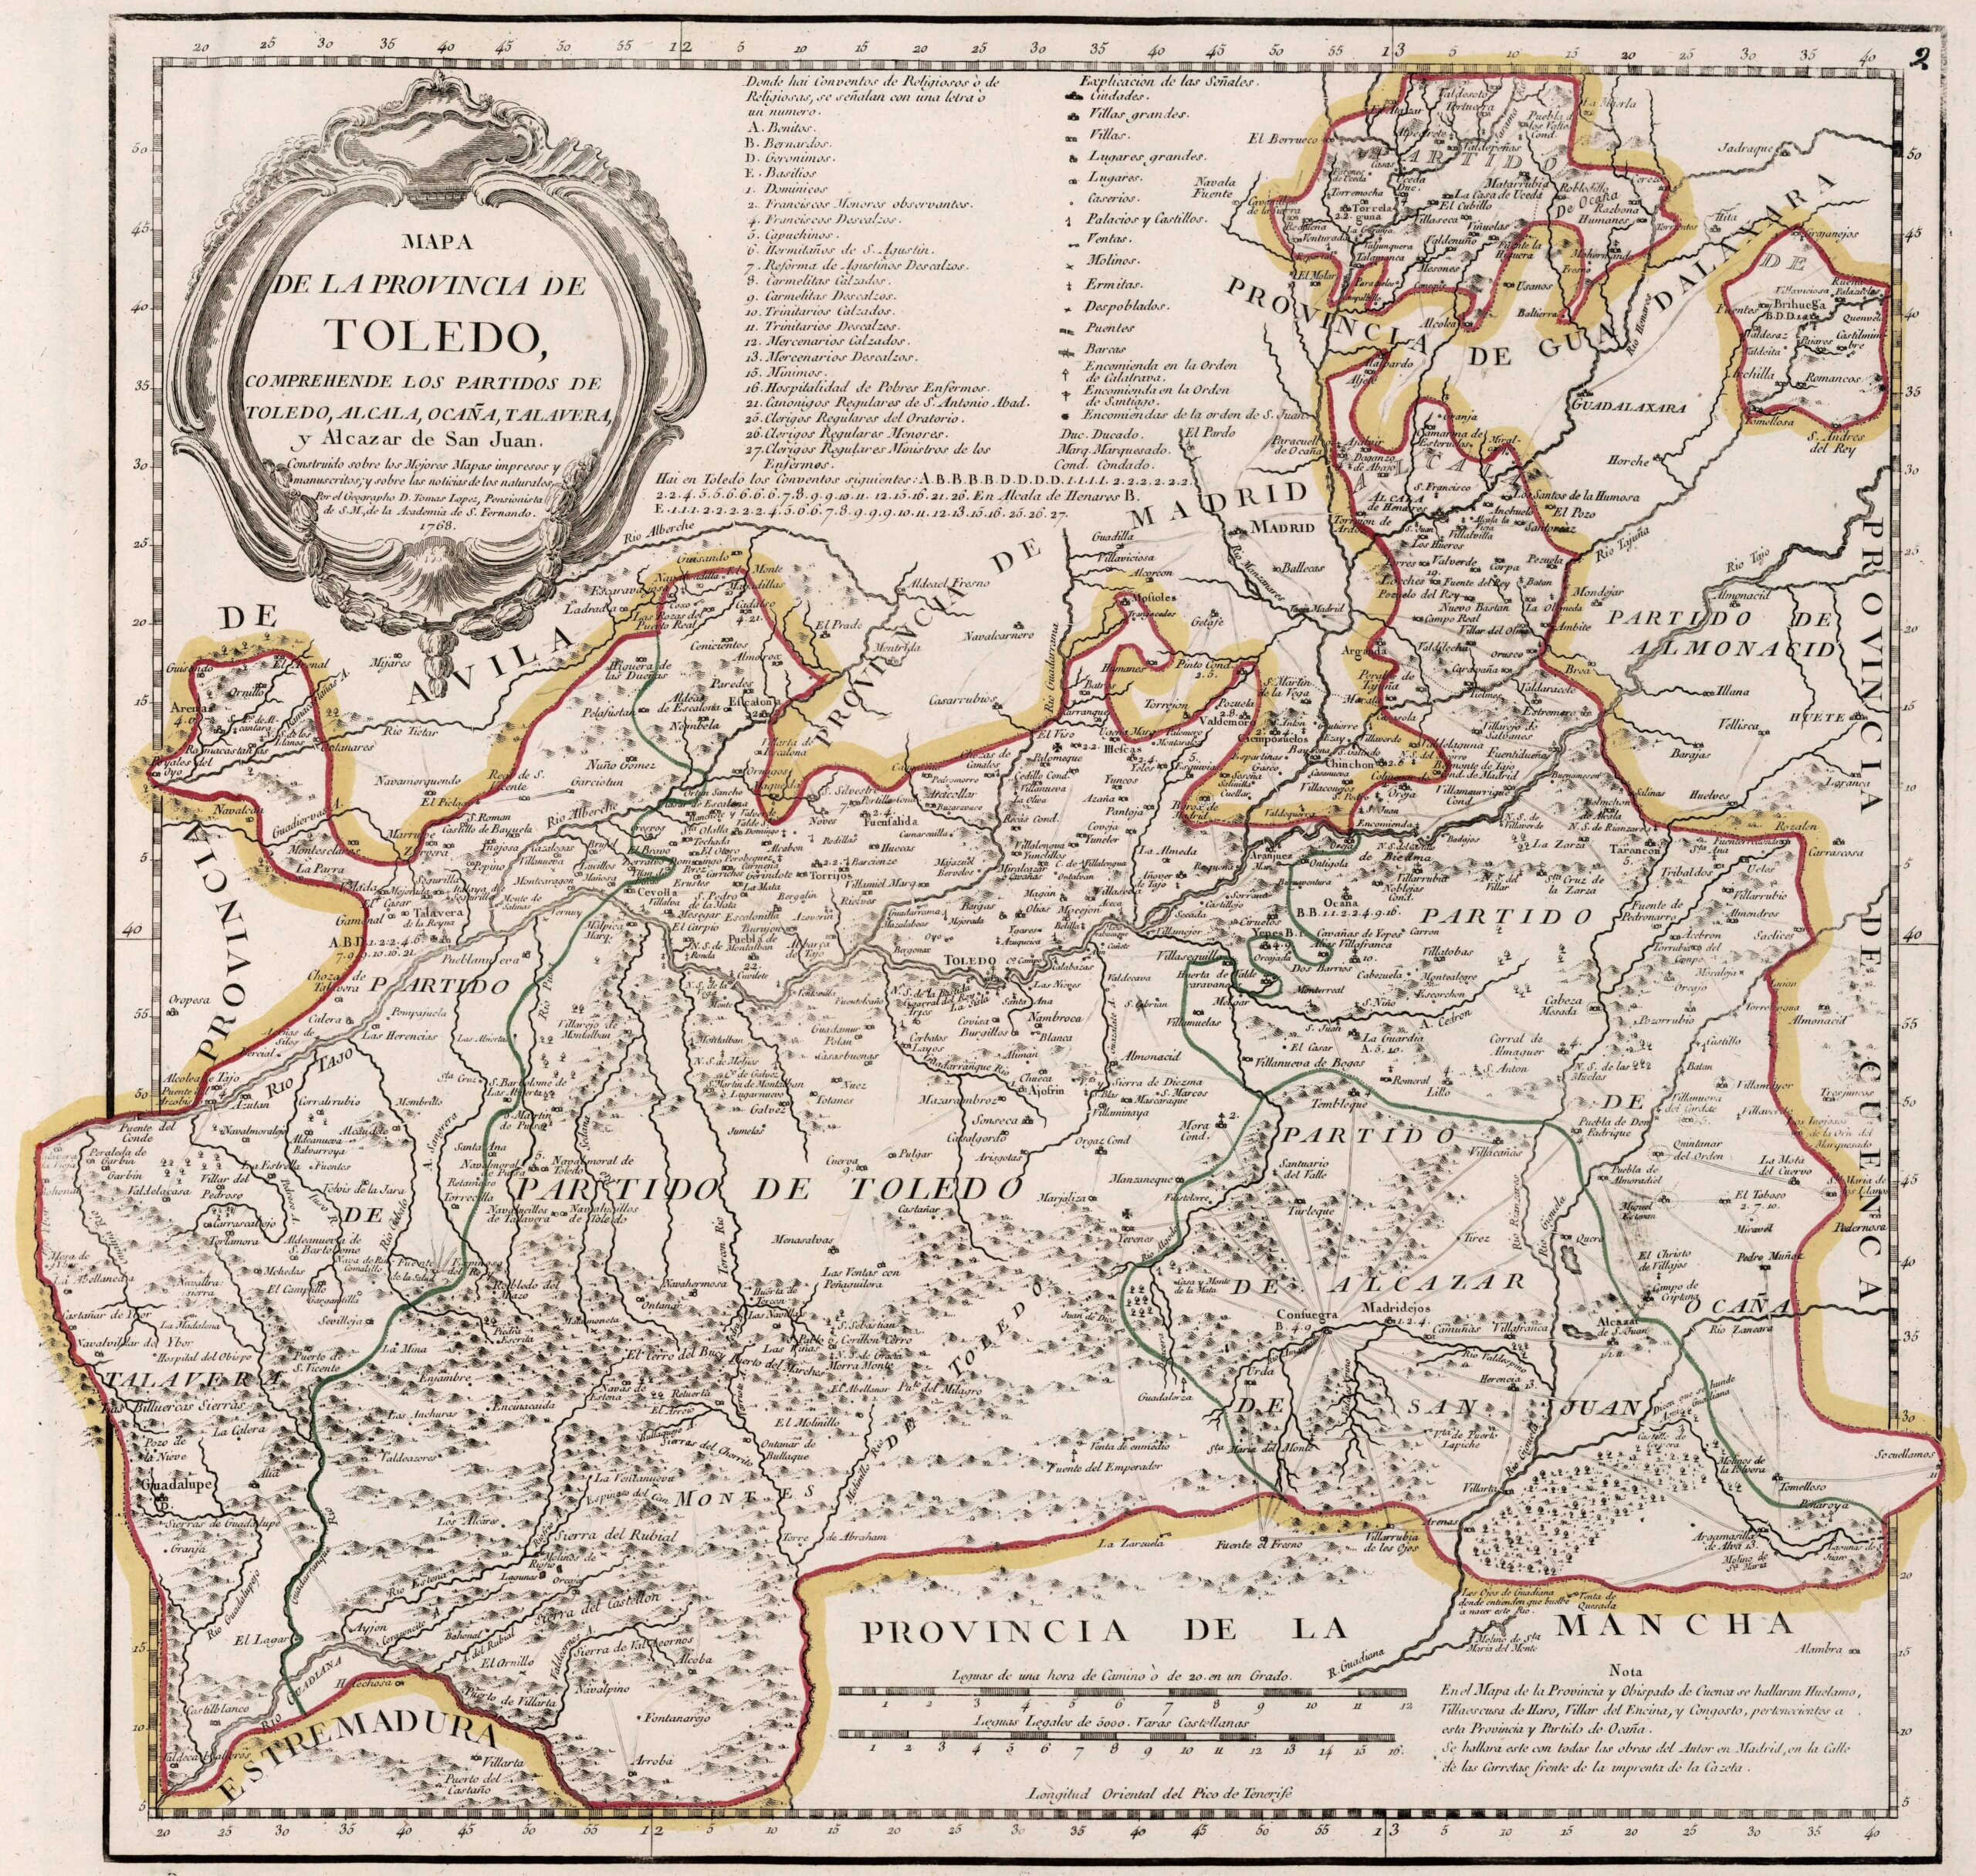 Mapa de la provincia de Toledo (1768)